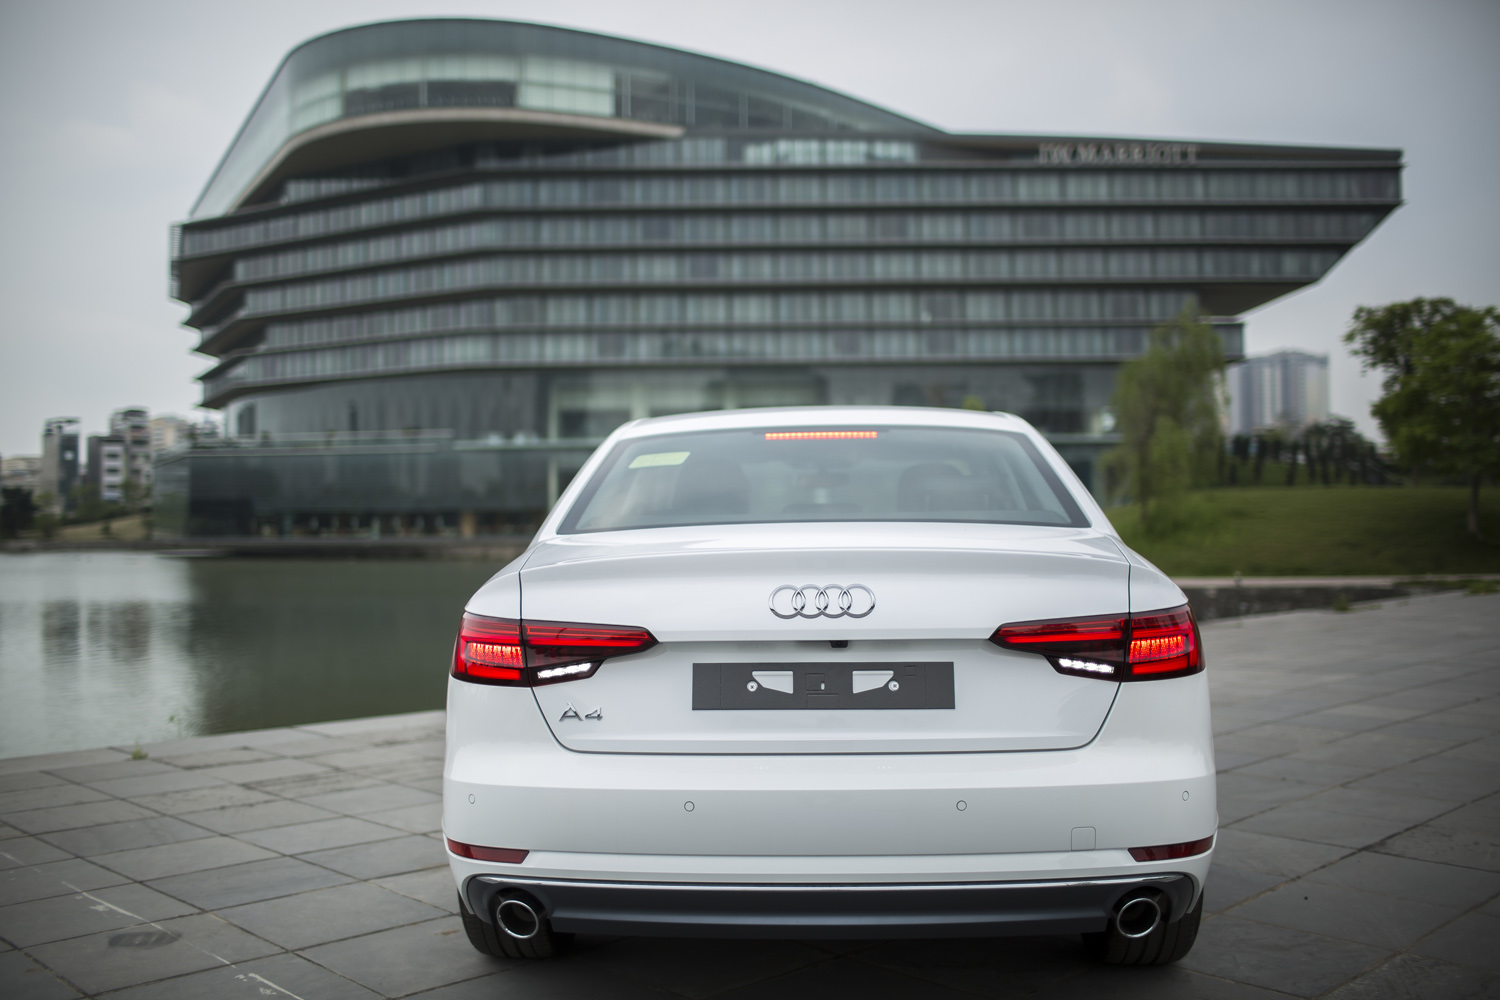 
Audi A4 thế hệ mới nhìn từ phía sau mang dáng vẻ thể thao hơn với đèn hậu dạng LED cùng xi-nhan tia đặc trưng của Audi. Ống xả kép cùng viền mạ crôm mang lại cảm giác thể thao và sang trọng cho mẫu xe sedan này.
